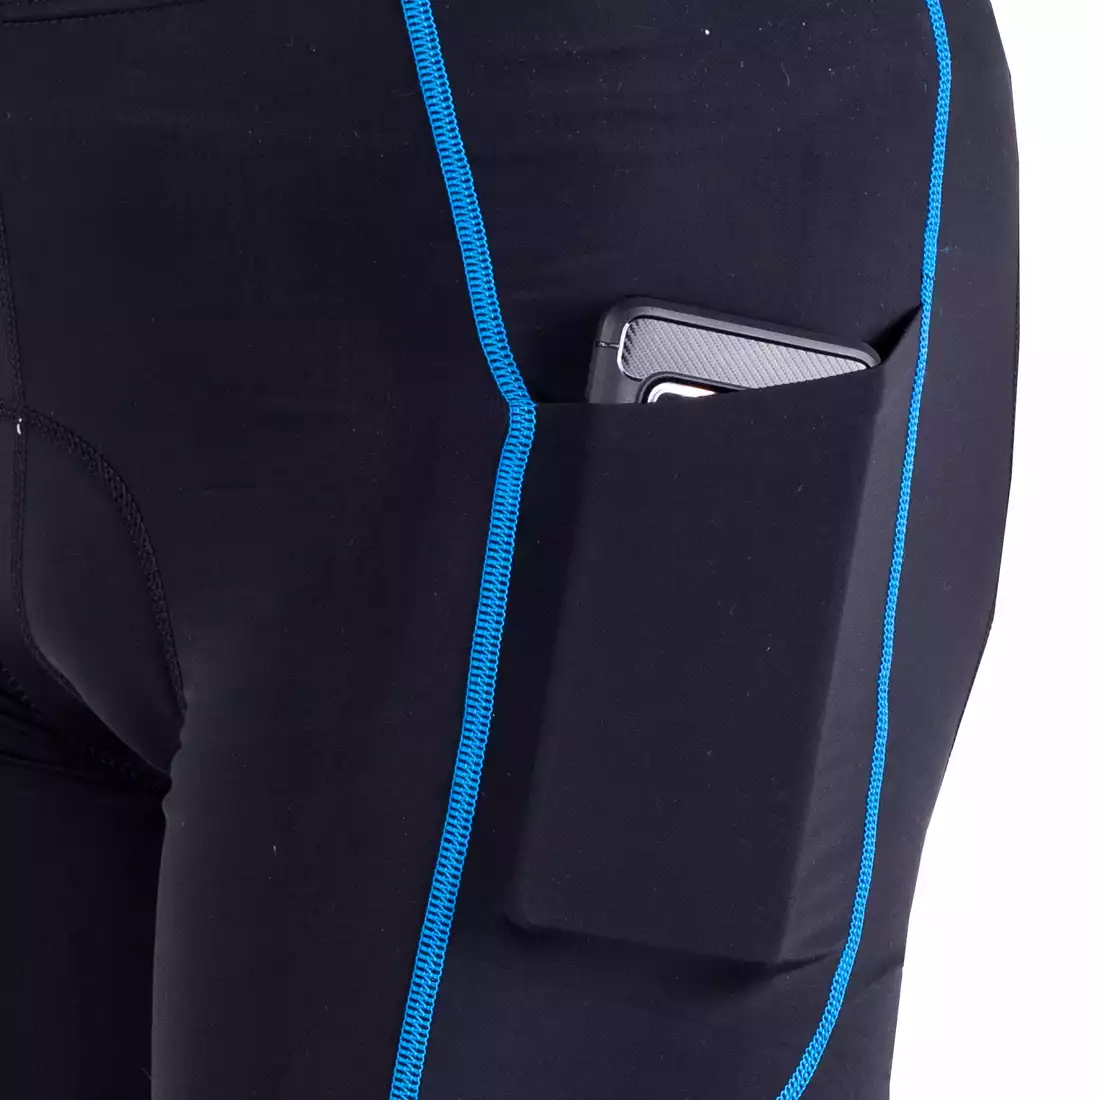 DEKO POCKET pantaloni scurți pentru bărbați, negru și albastru